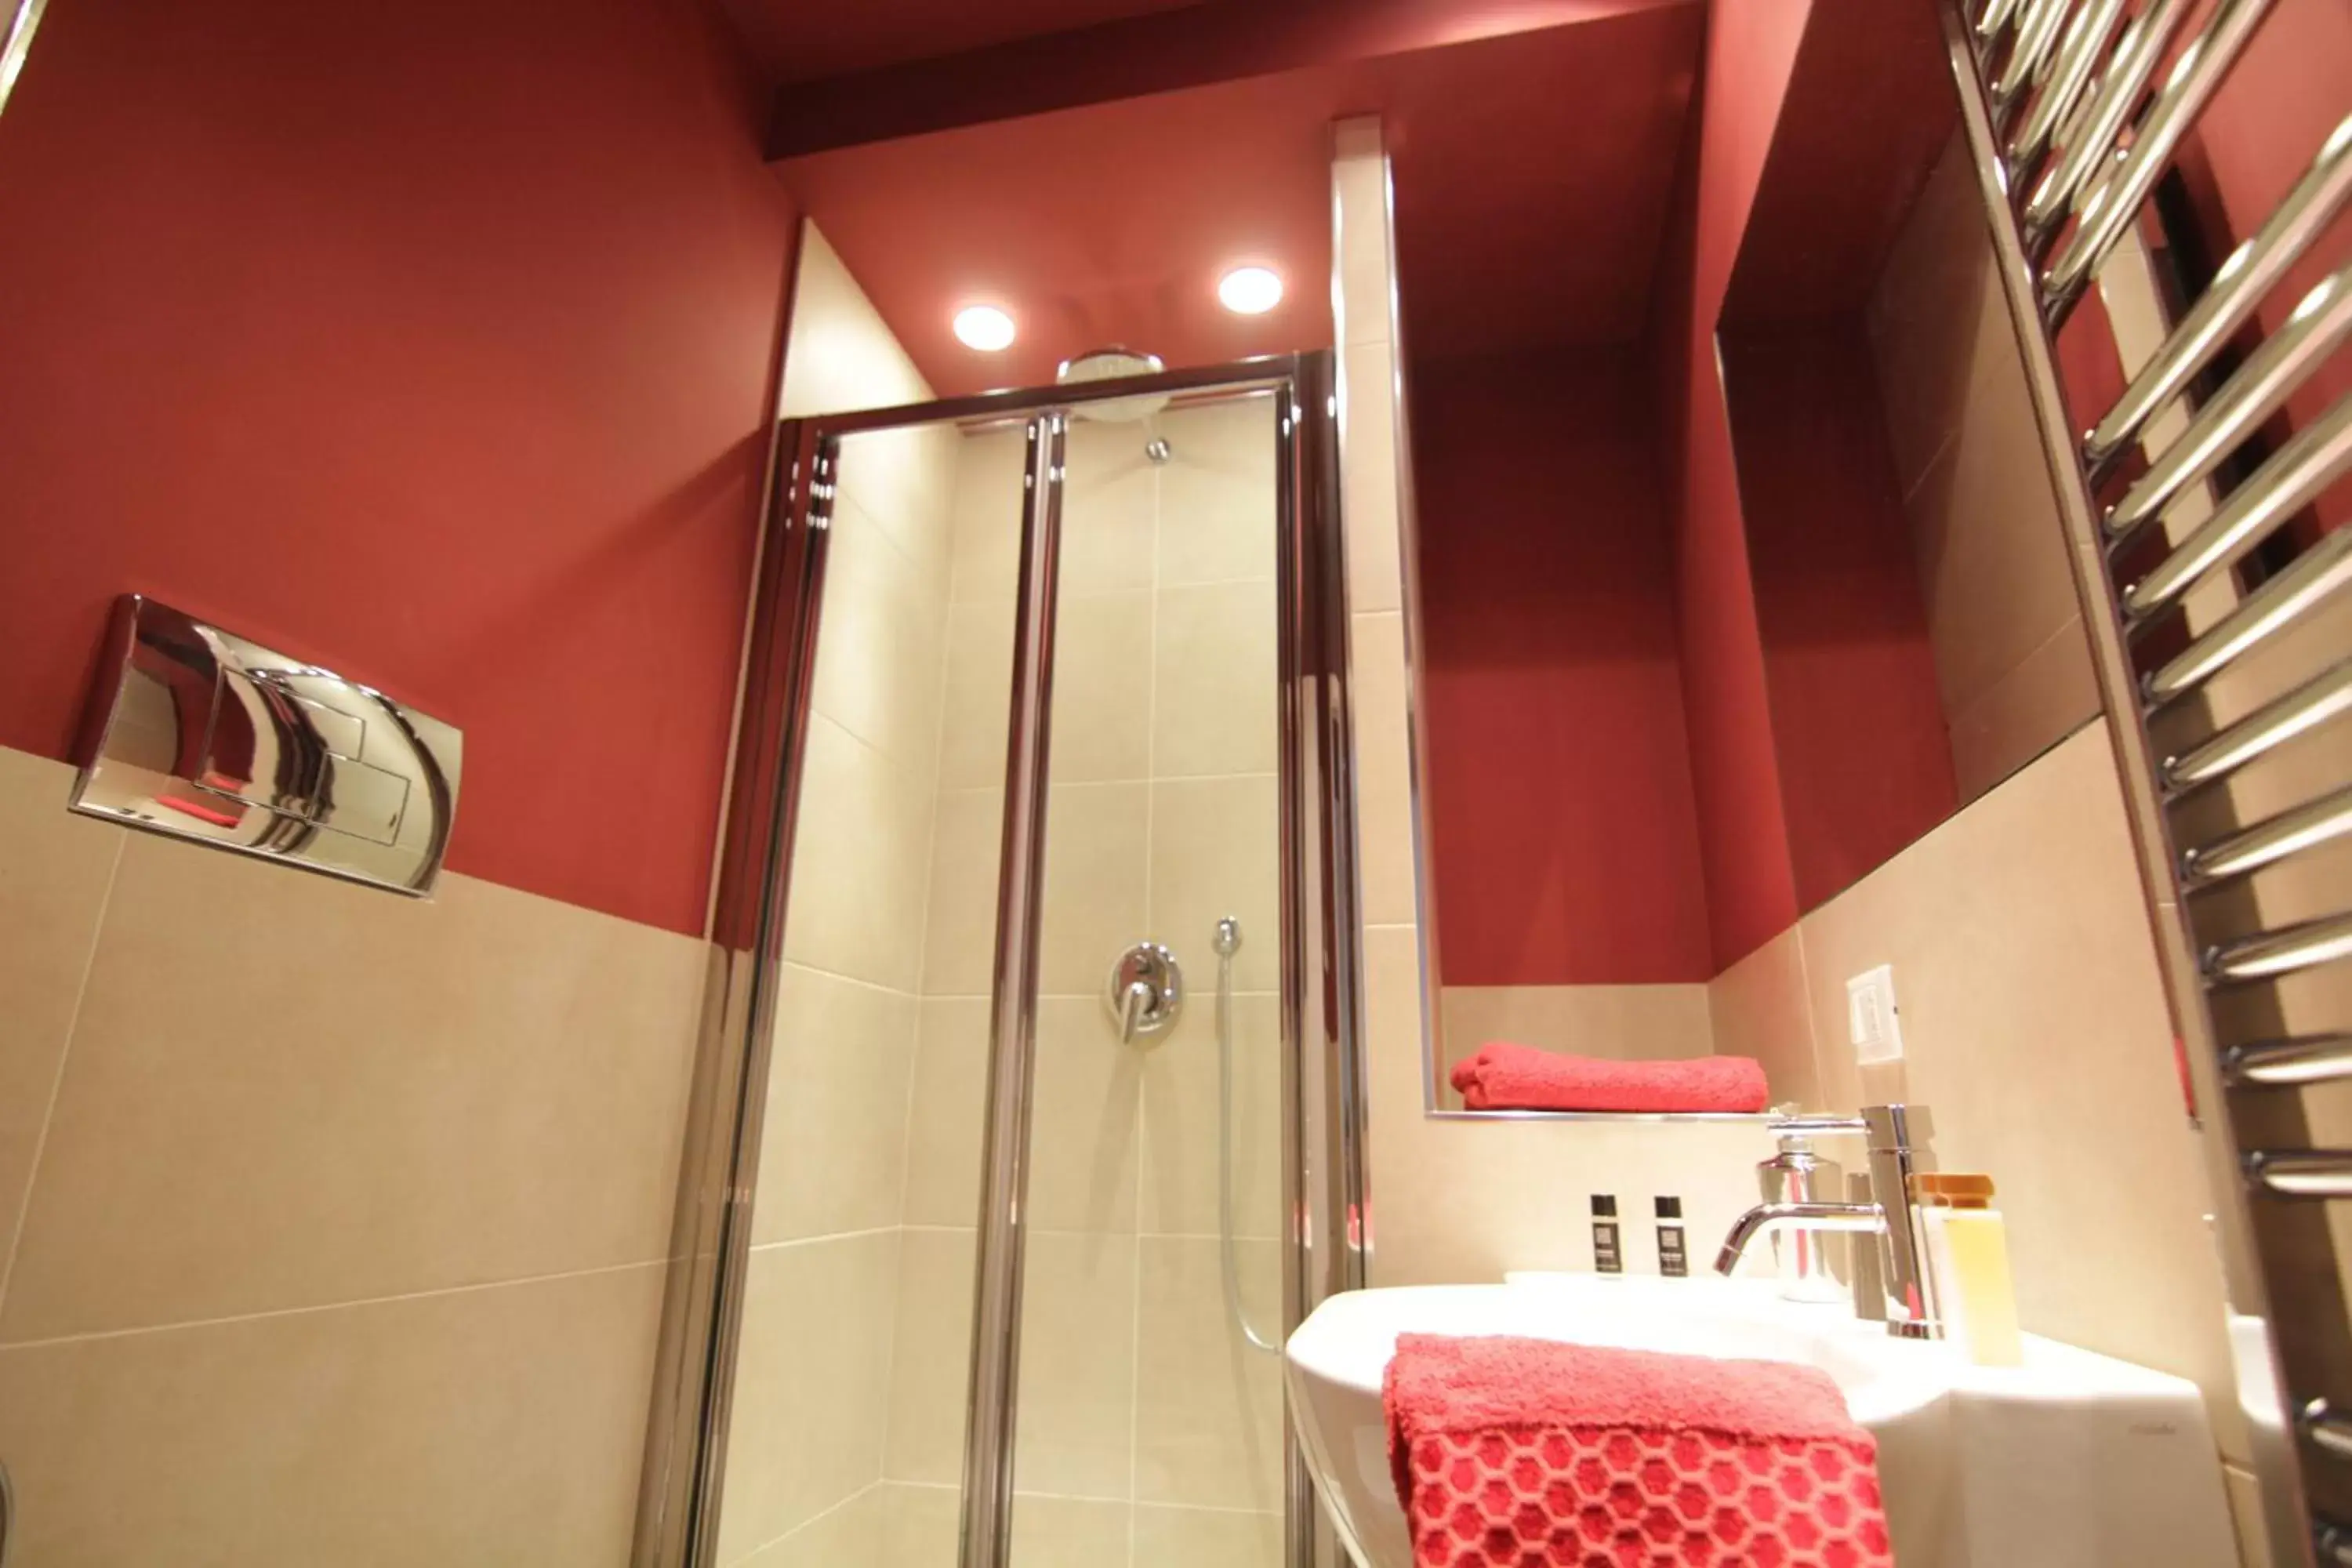 Shower, Bathroom in 120 Rodionoff Palermo Centro - Ben collegato con l'aeroporto, la spiaggia di Mondello